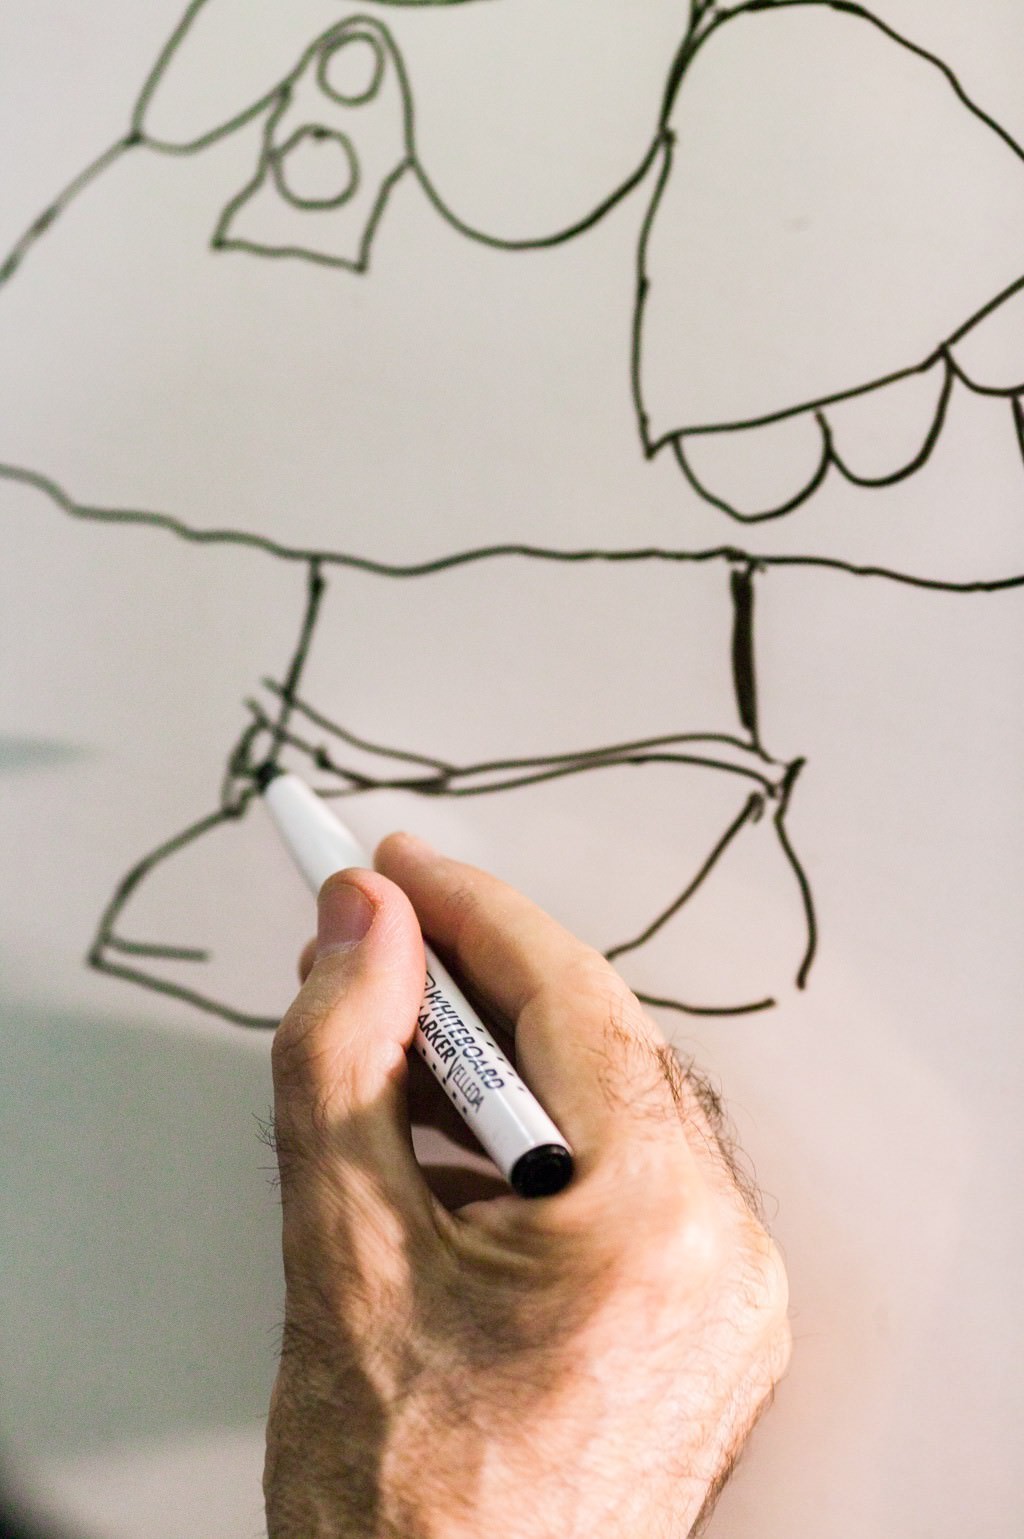 Retratos de Quino dibujando a Mafalda en una pizarra